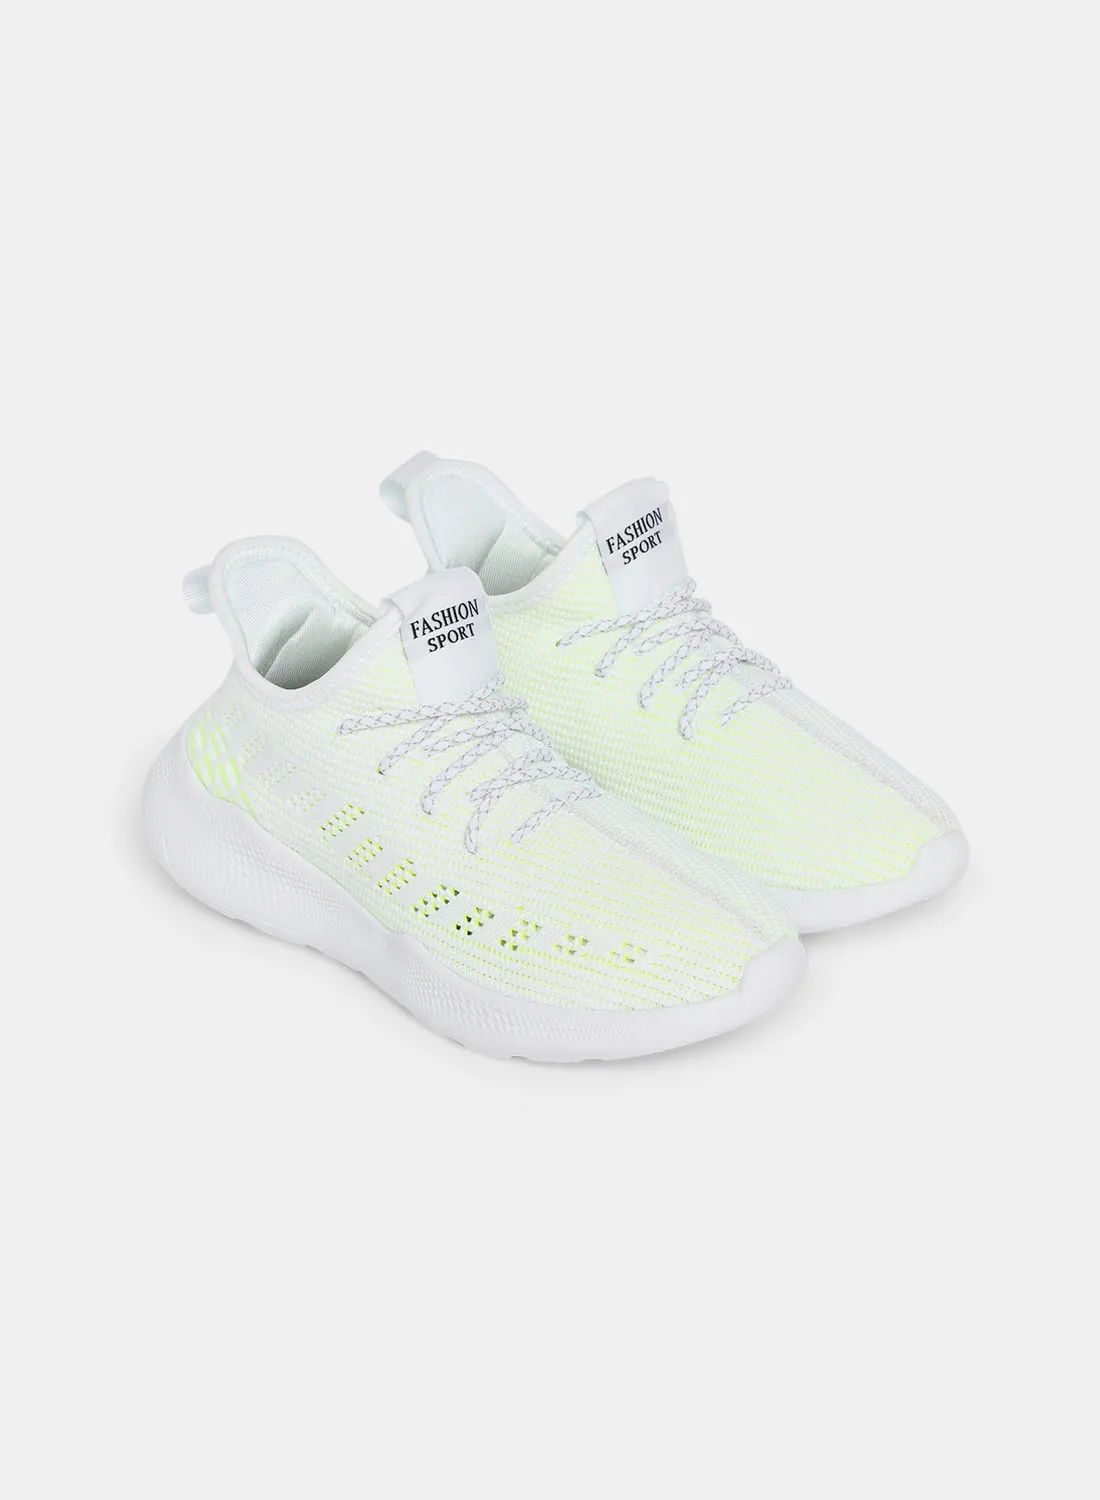 Athletiq Women's Flyknit Sport Sneakers White/Green